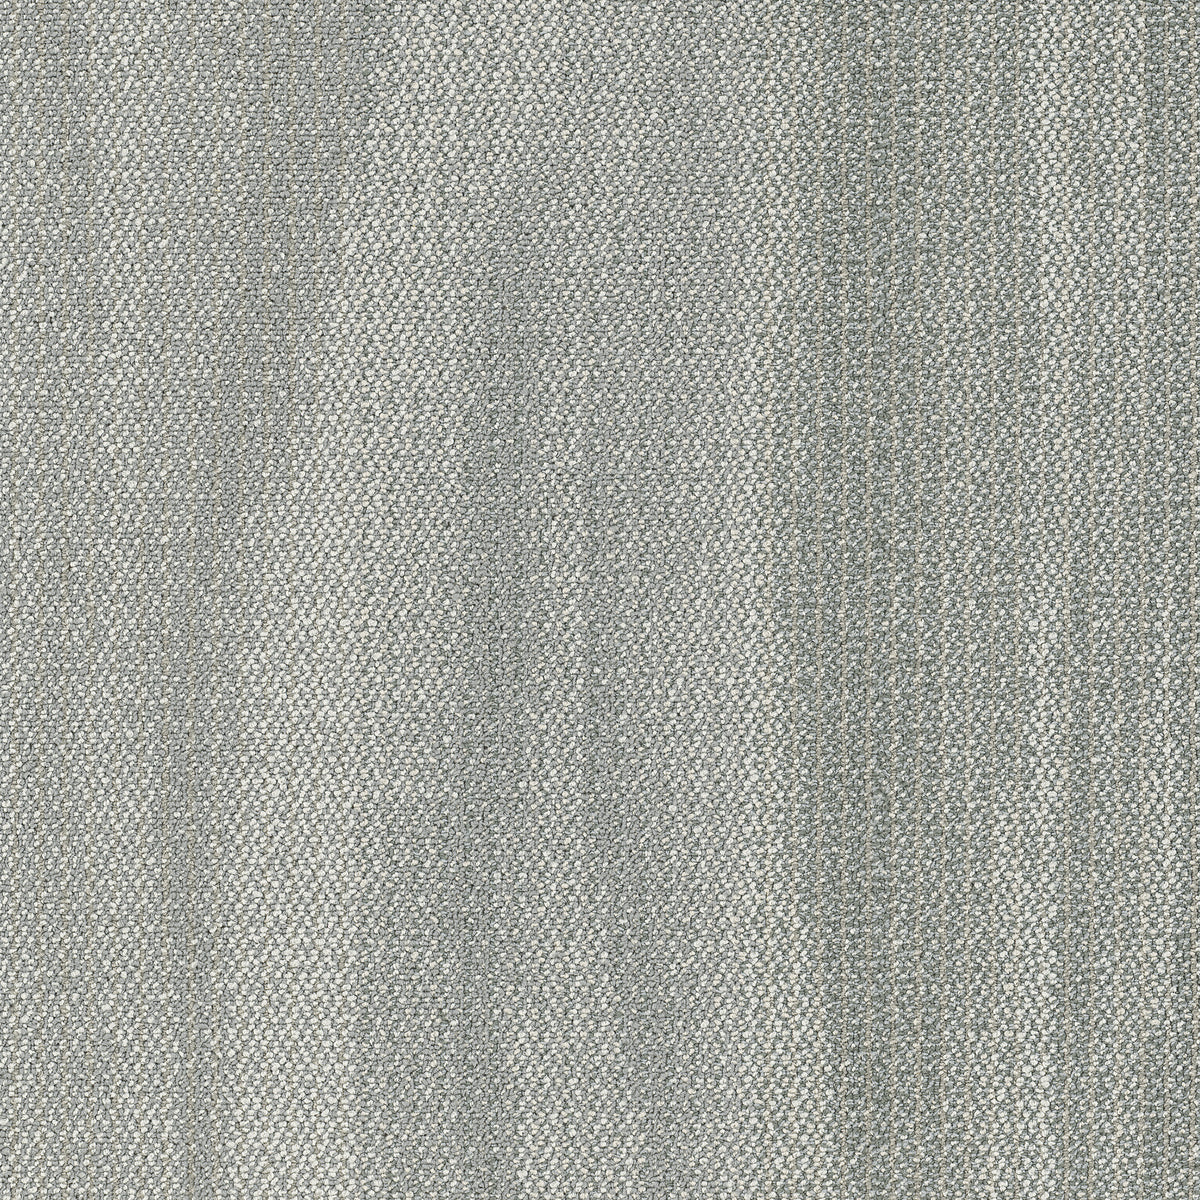 Shaw Contract - Places - Sky Tile - Carpet Tile - Ocean